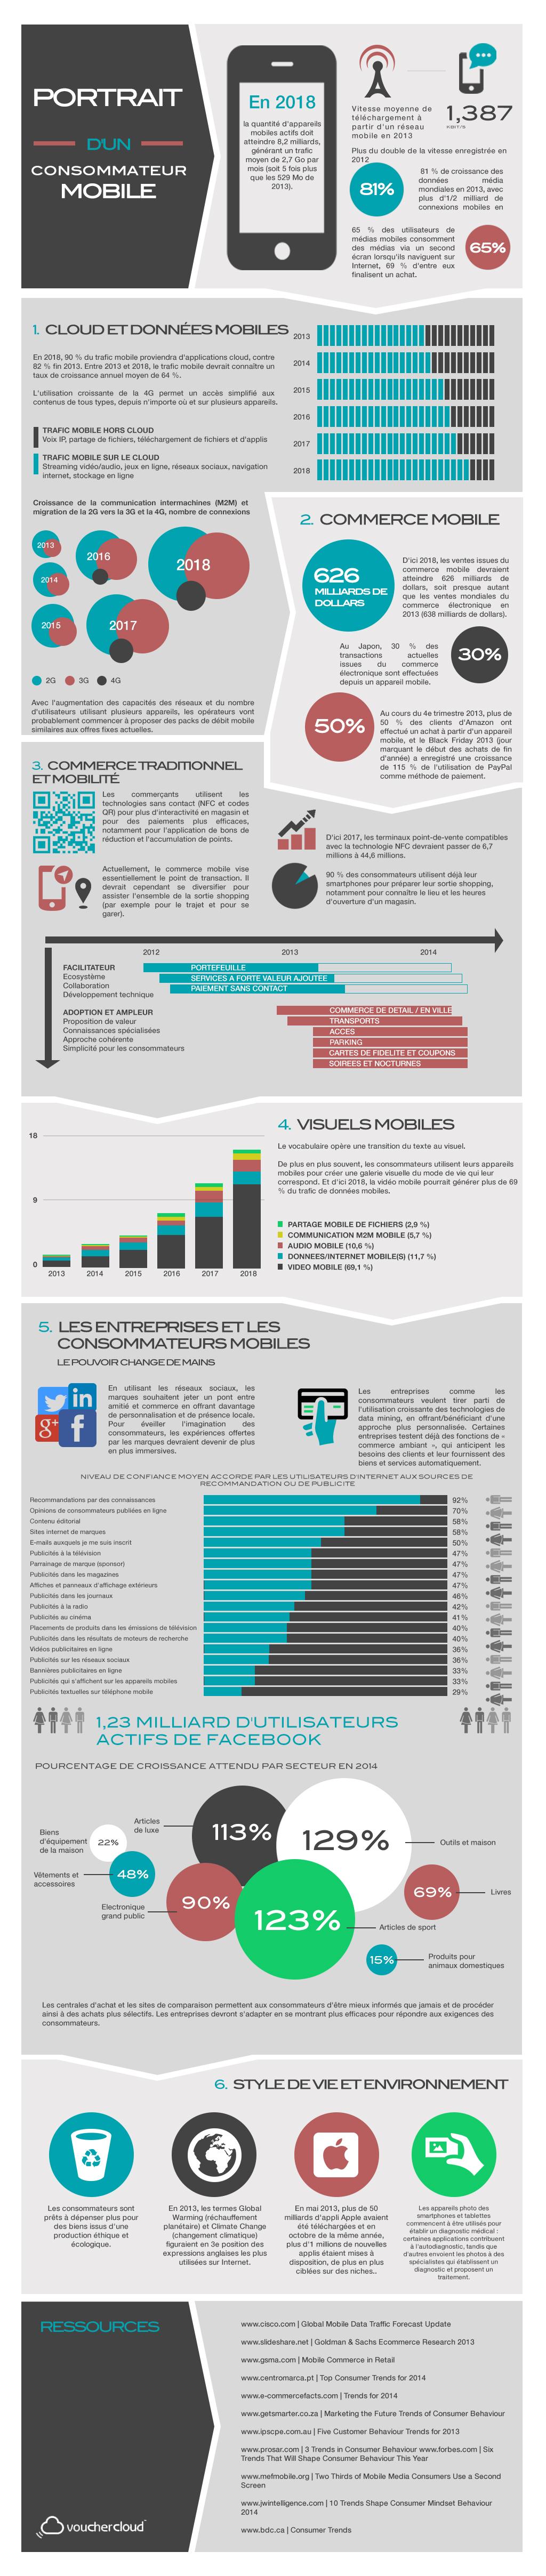 [Infographie] Comprendre Le Comportement Du Consommateur Mobile Pour Augmenter Ses Ventes